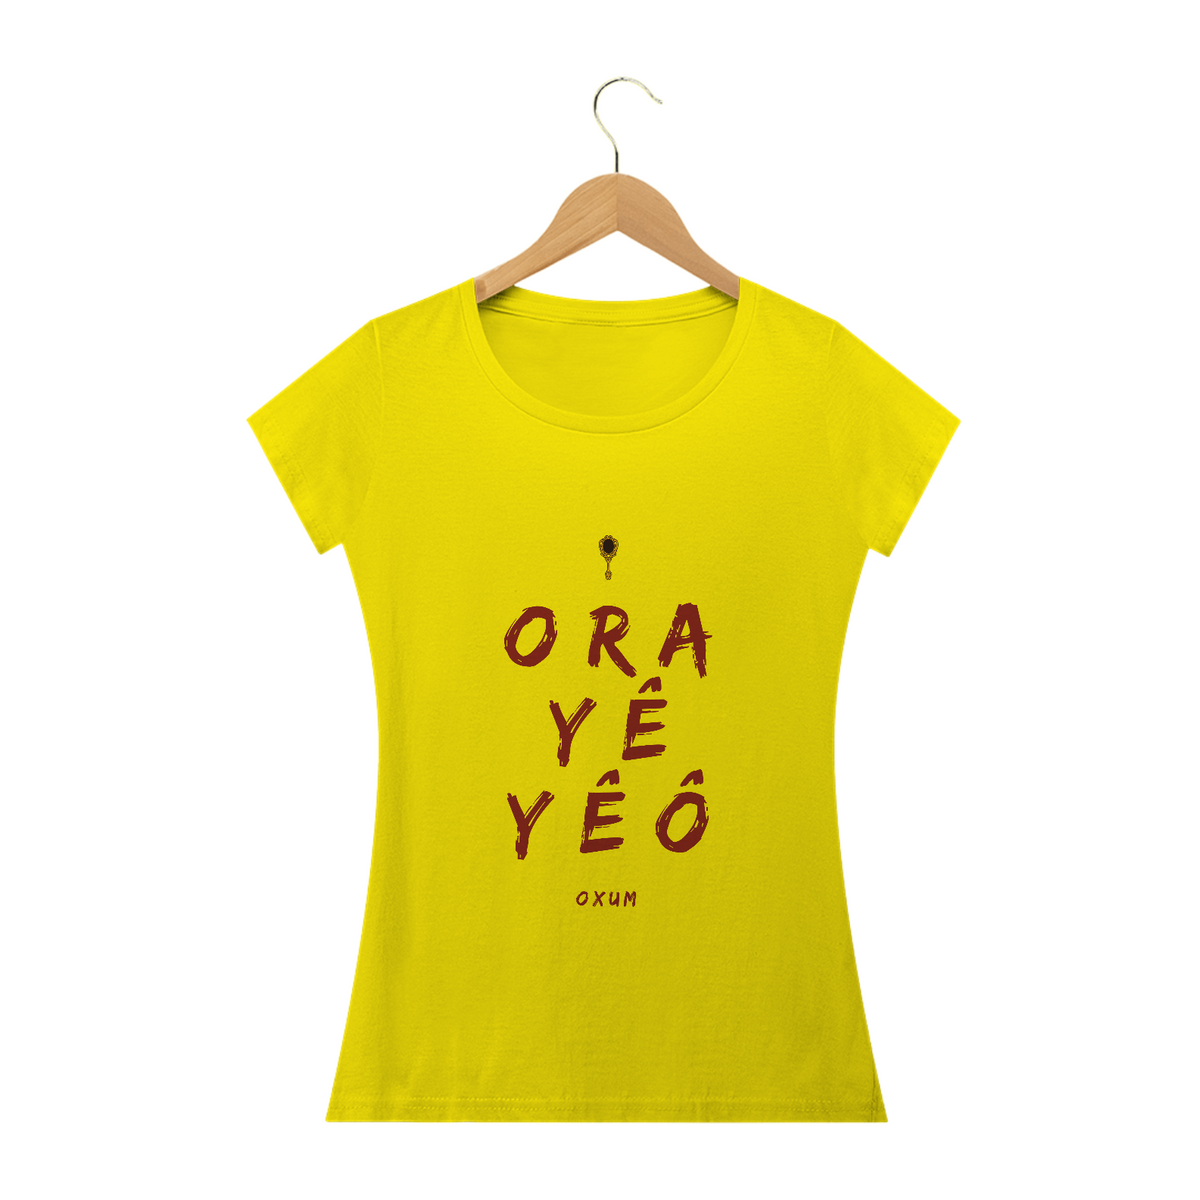 Nome do produto: Camiseta  Saudação Orixá Oxum - Orayêyê Oxum Baby Long Feminina Amarela